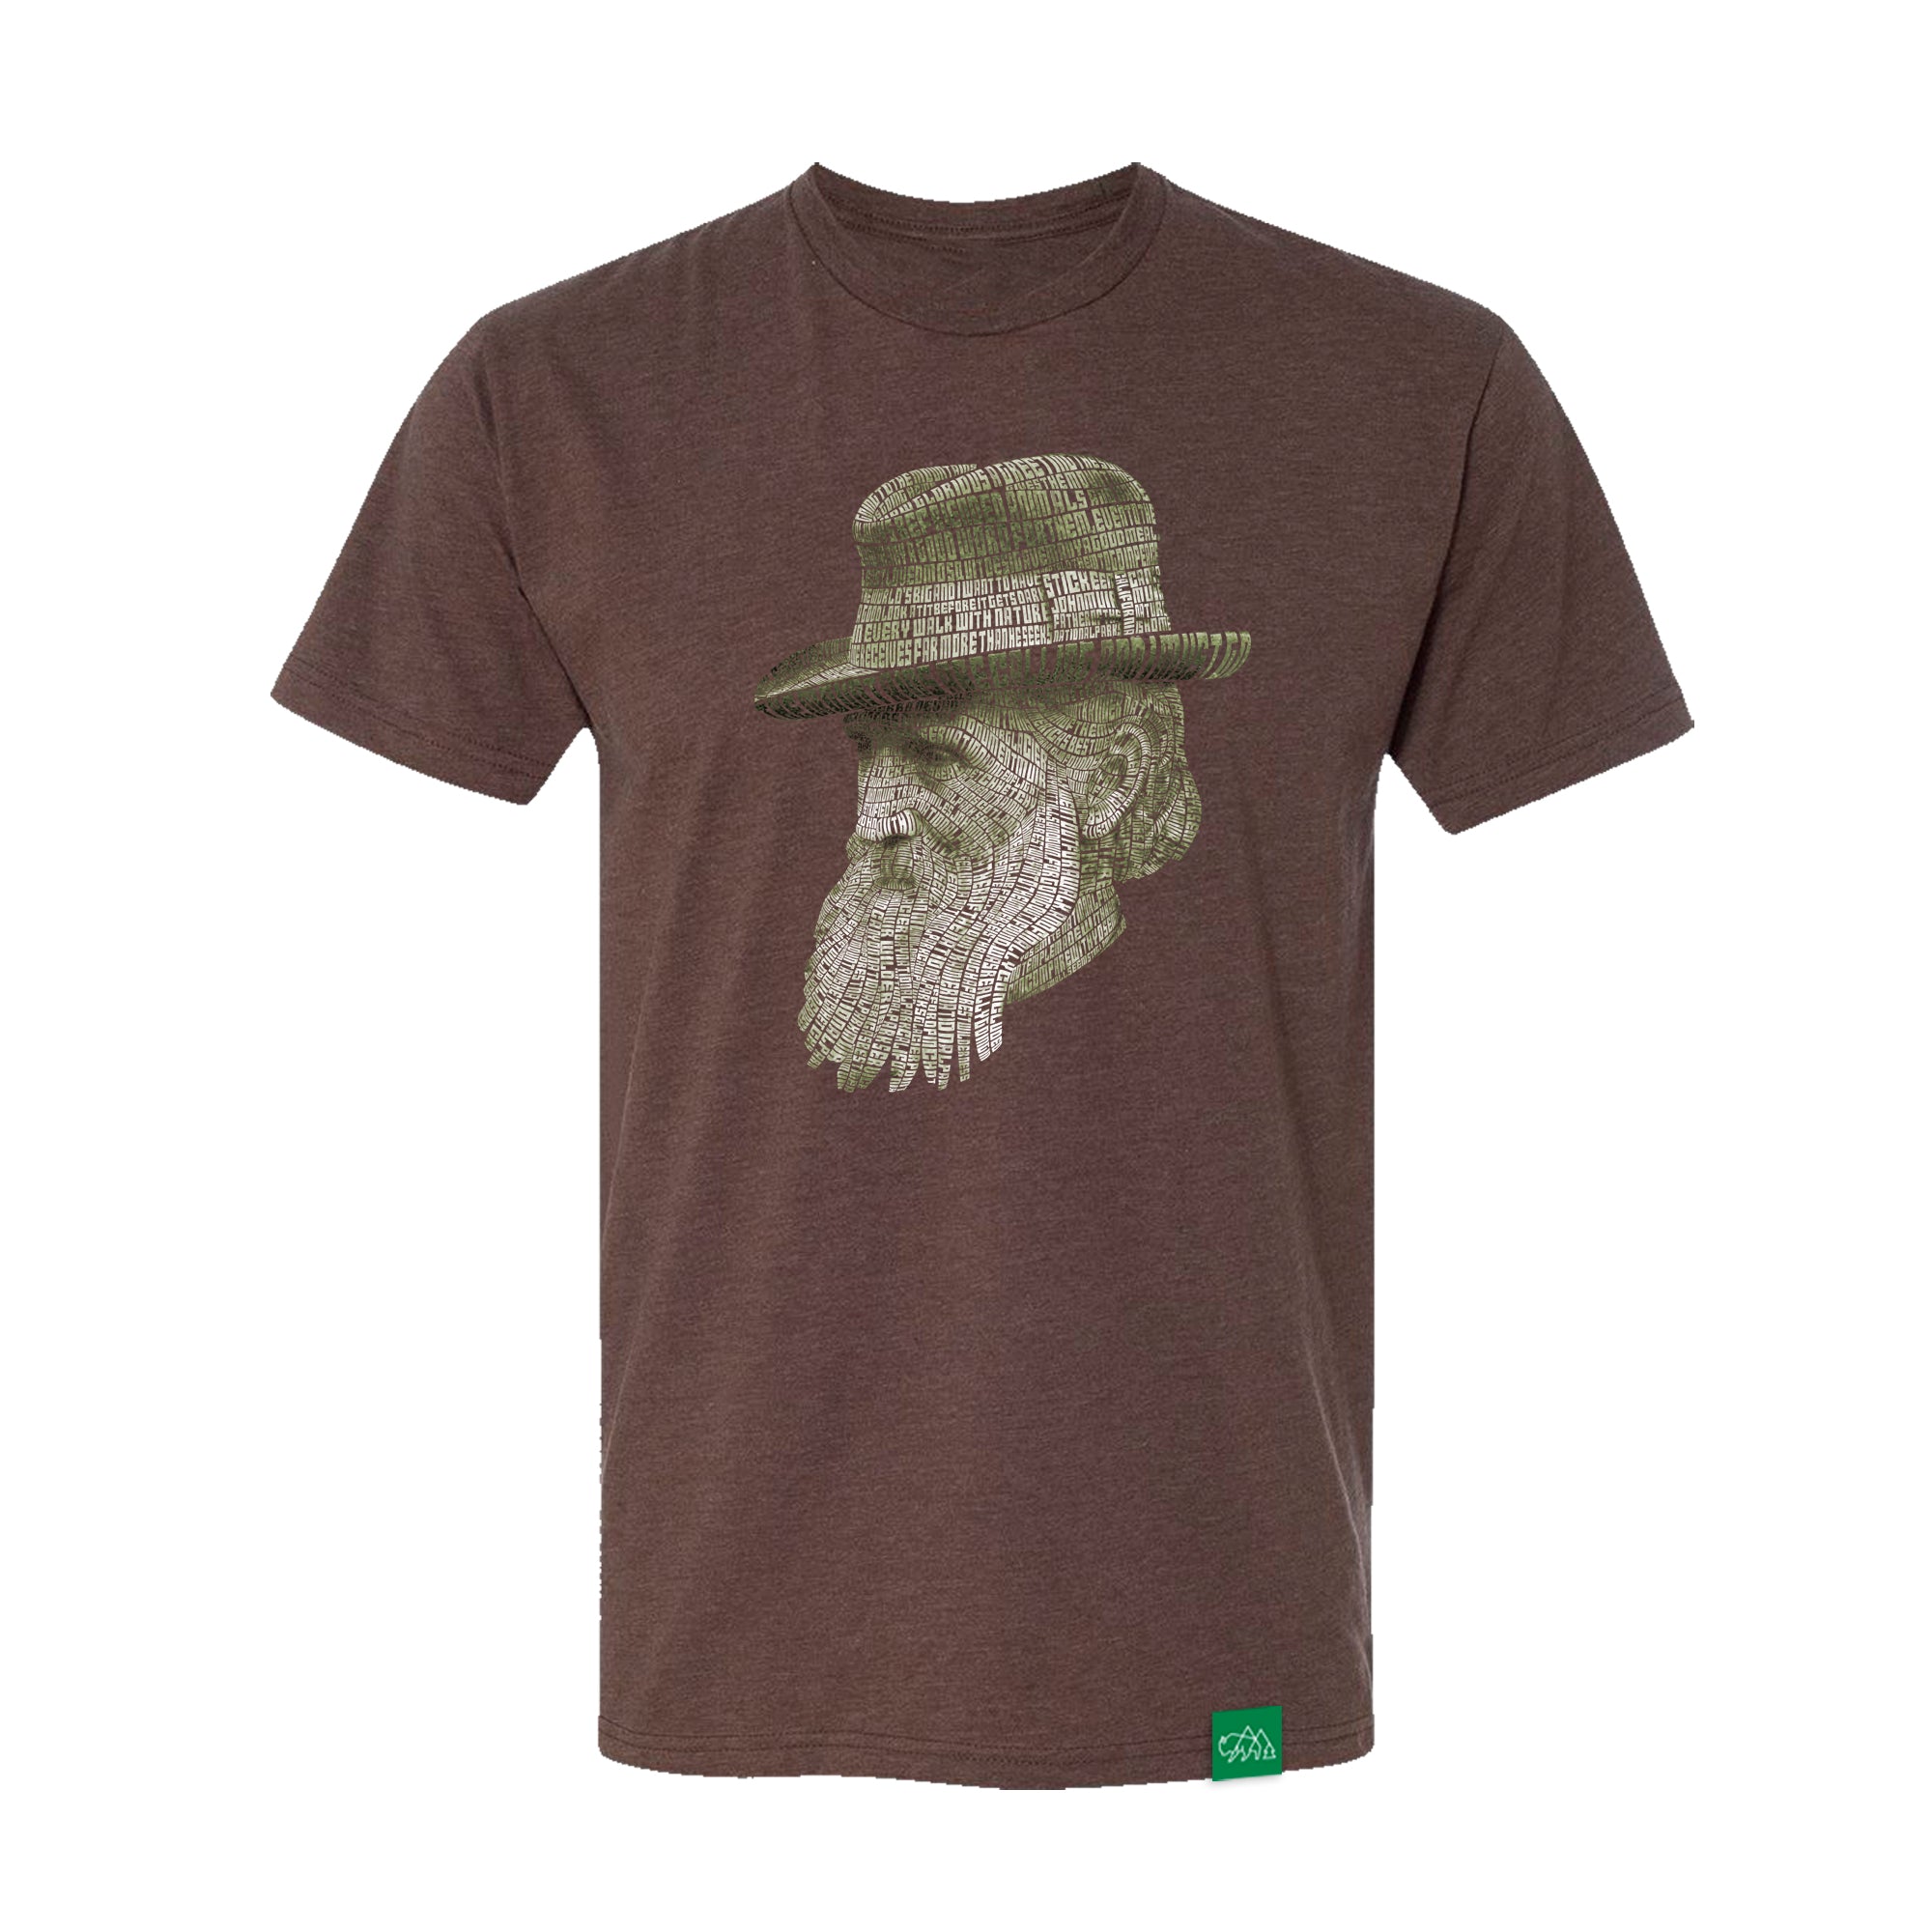 Life of John Muir T-Shirt